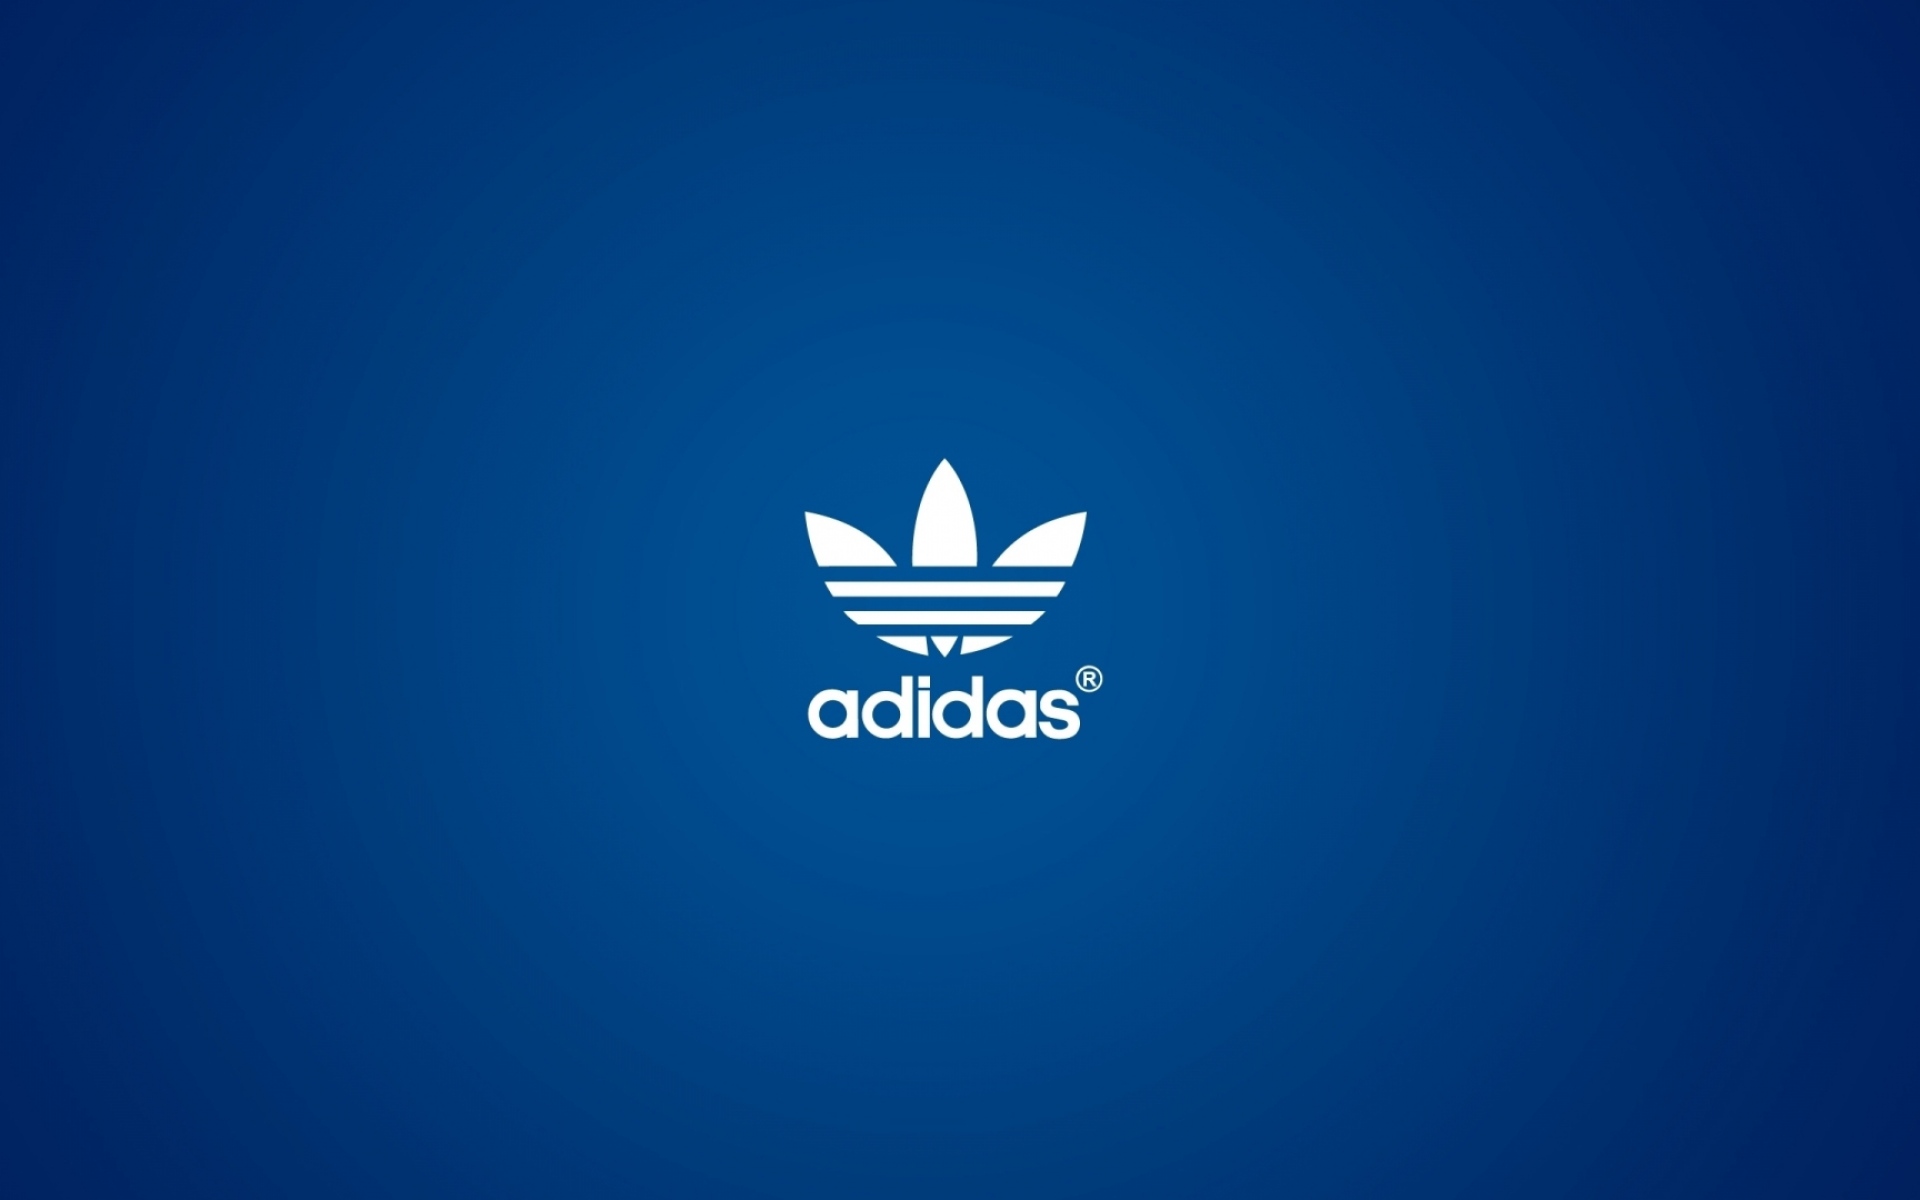 Картинки Adidas, логотип, синий фон фото и обои на рабочий стол